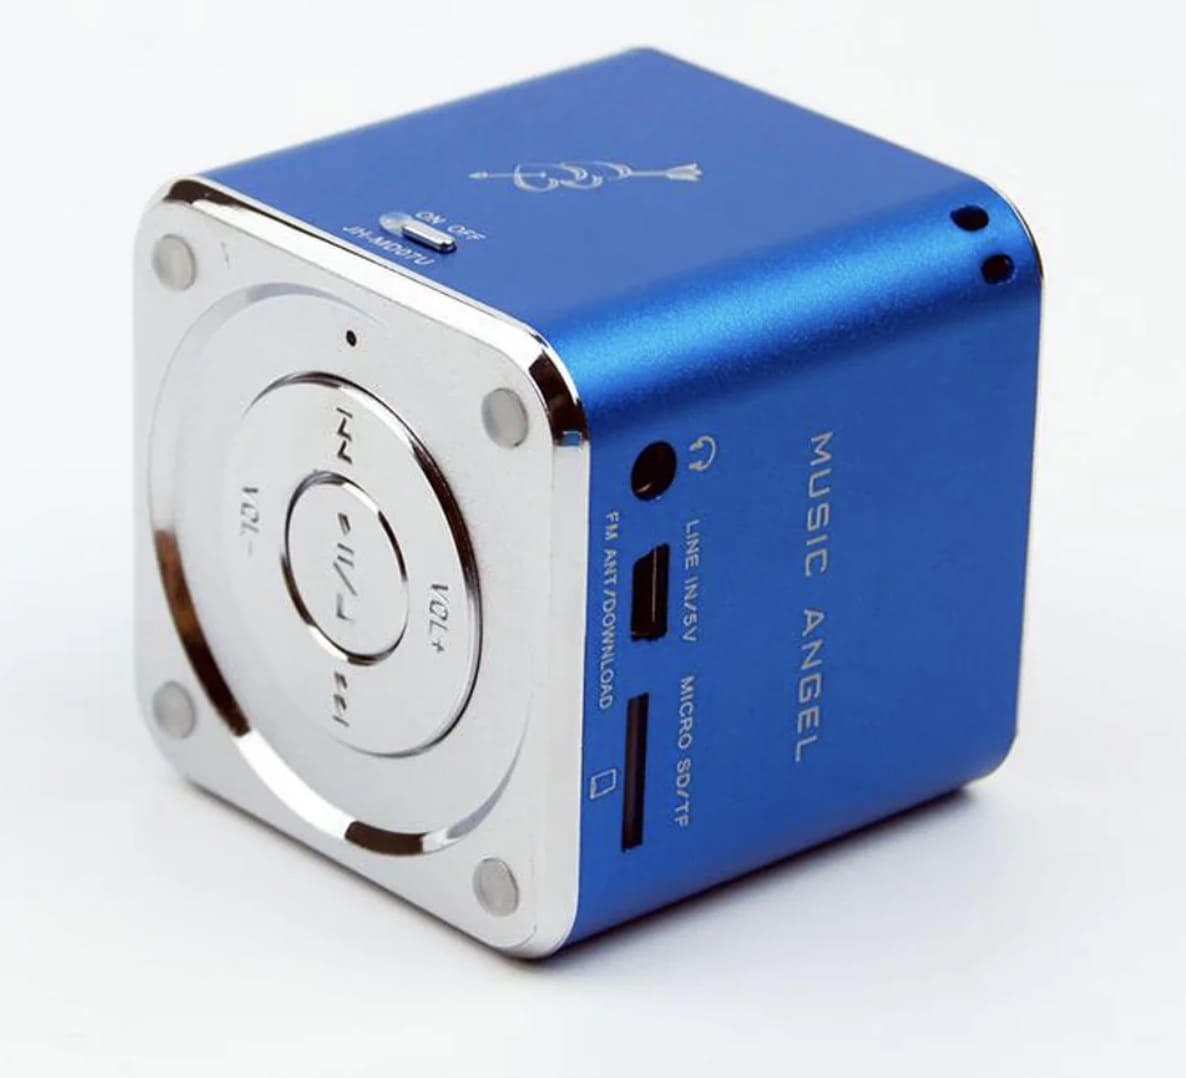 Lautsprecher mit Bluetooth, der auf Reisen in der Tasche mitgenommen werden kann